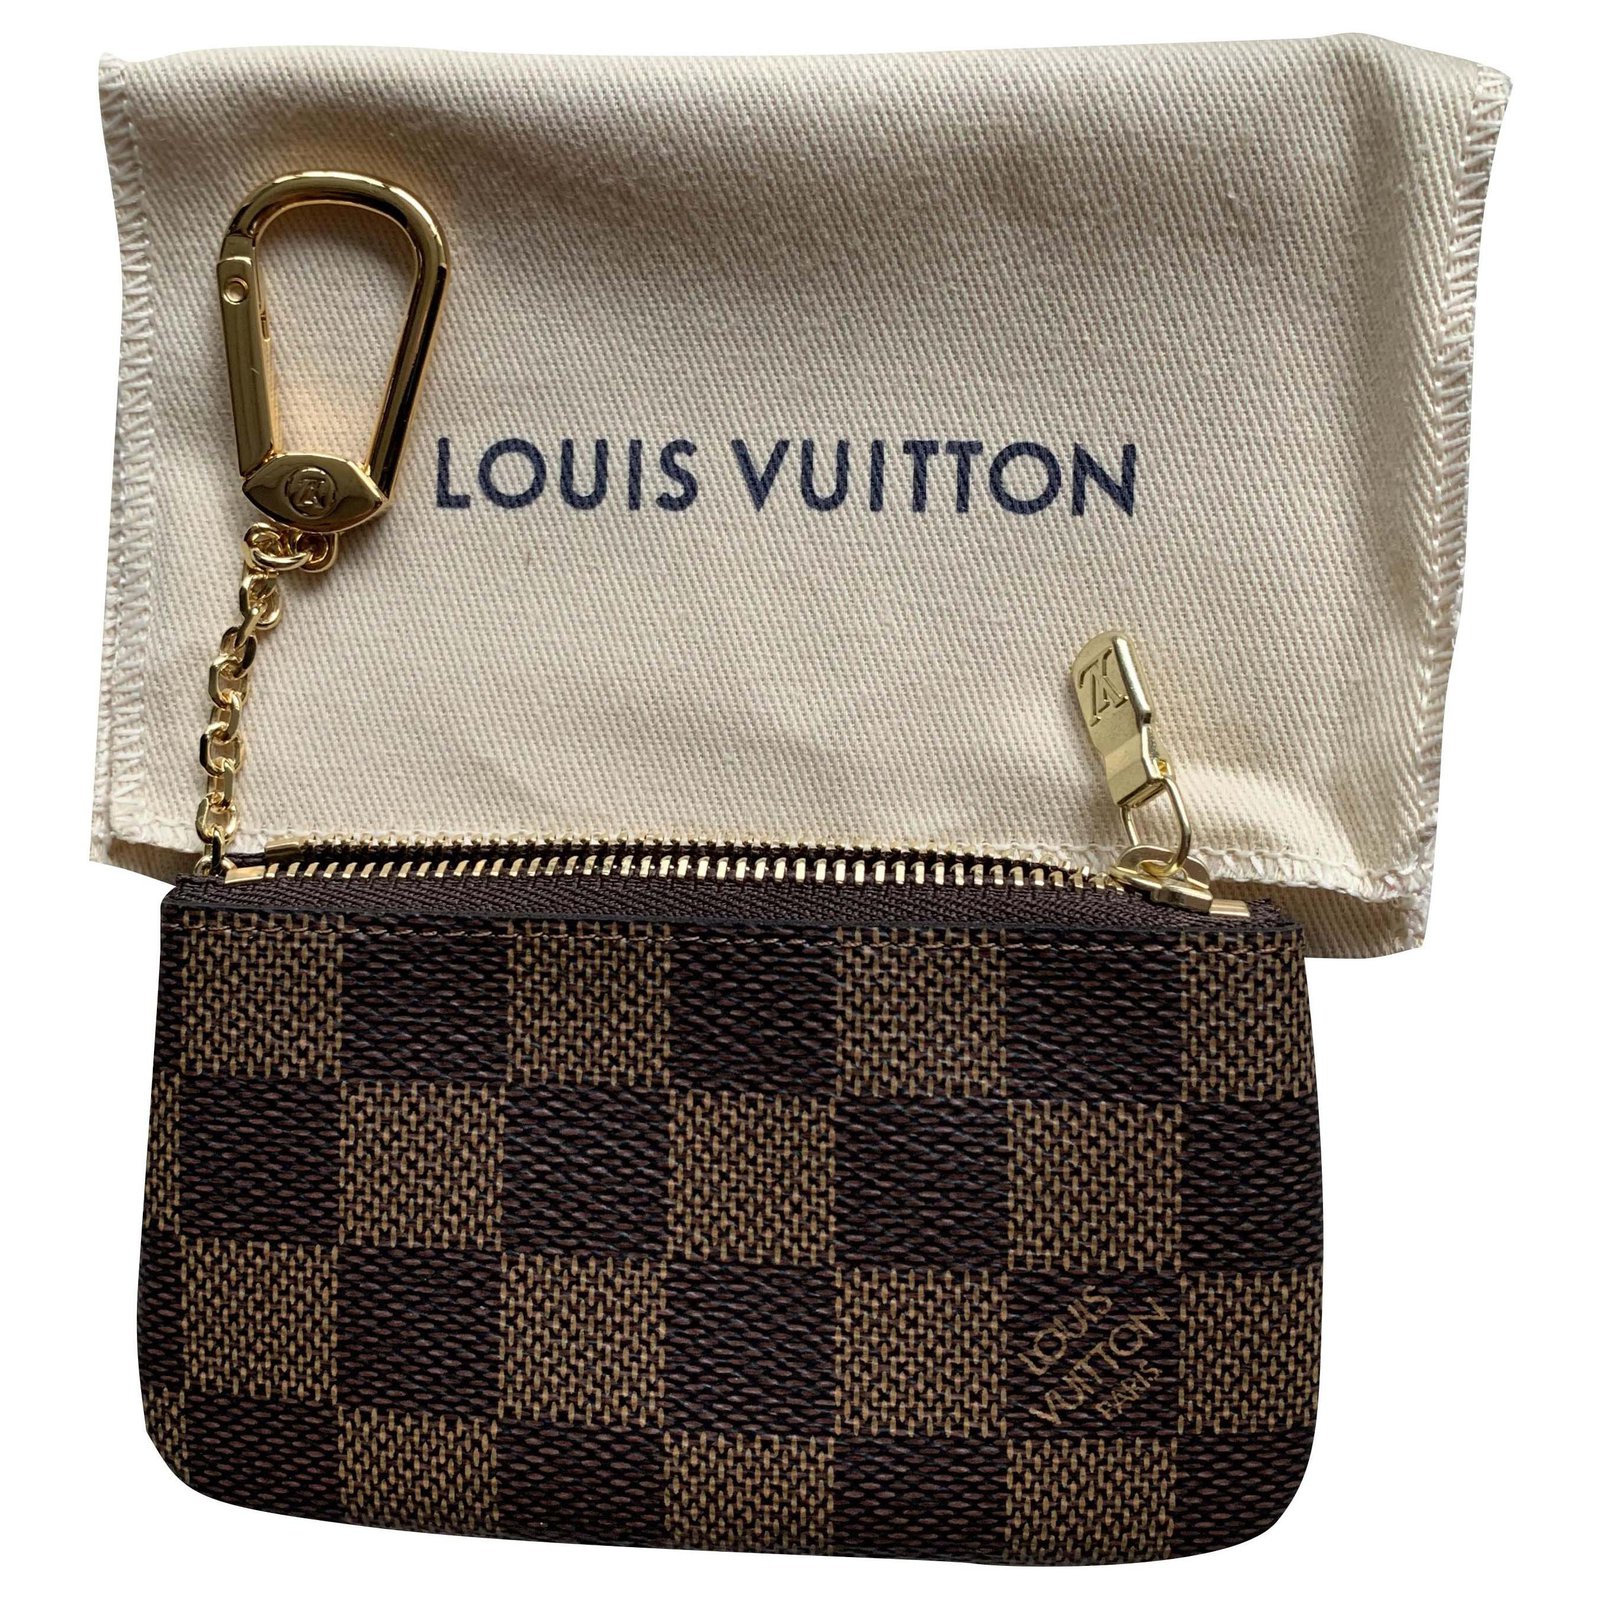 Authentic Louis Vuitton Key Pouch Damier Ebene